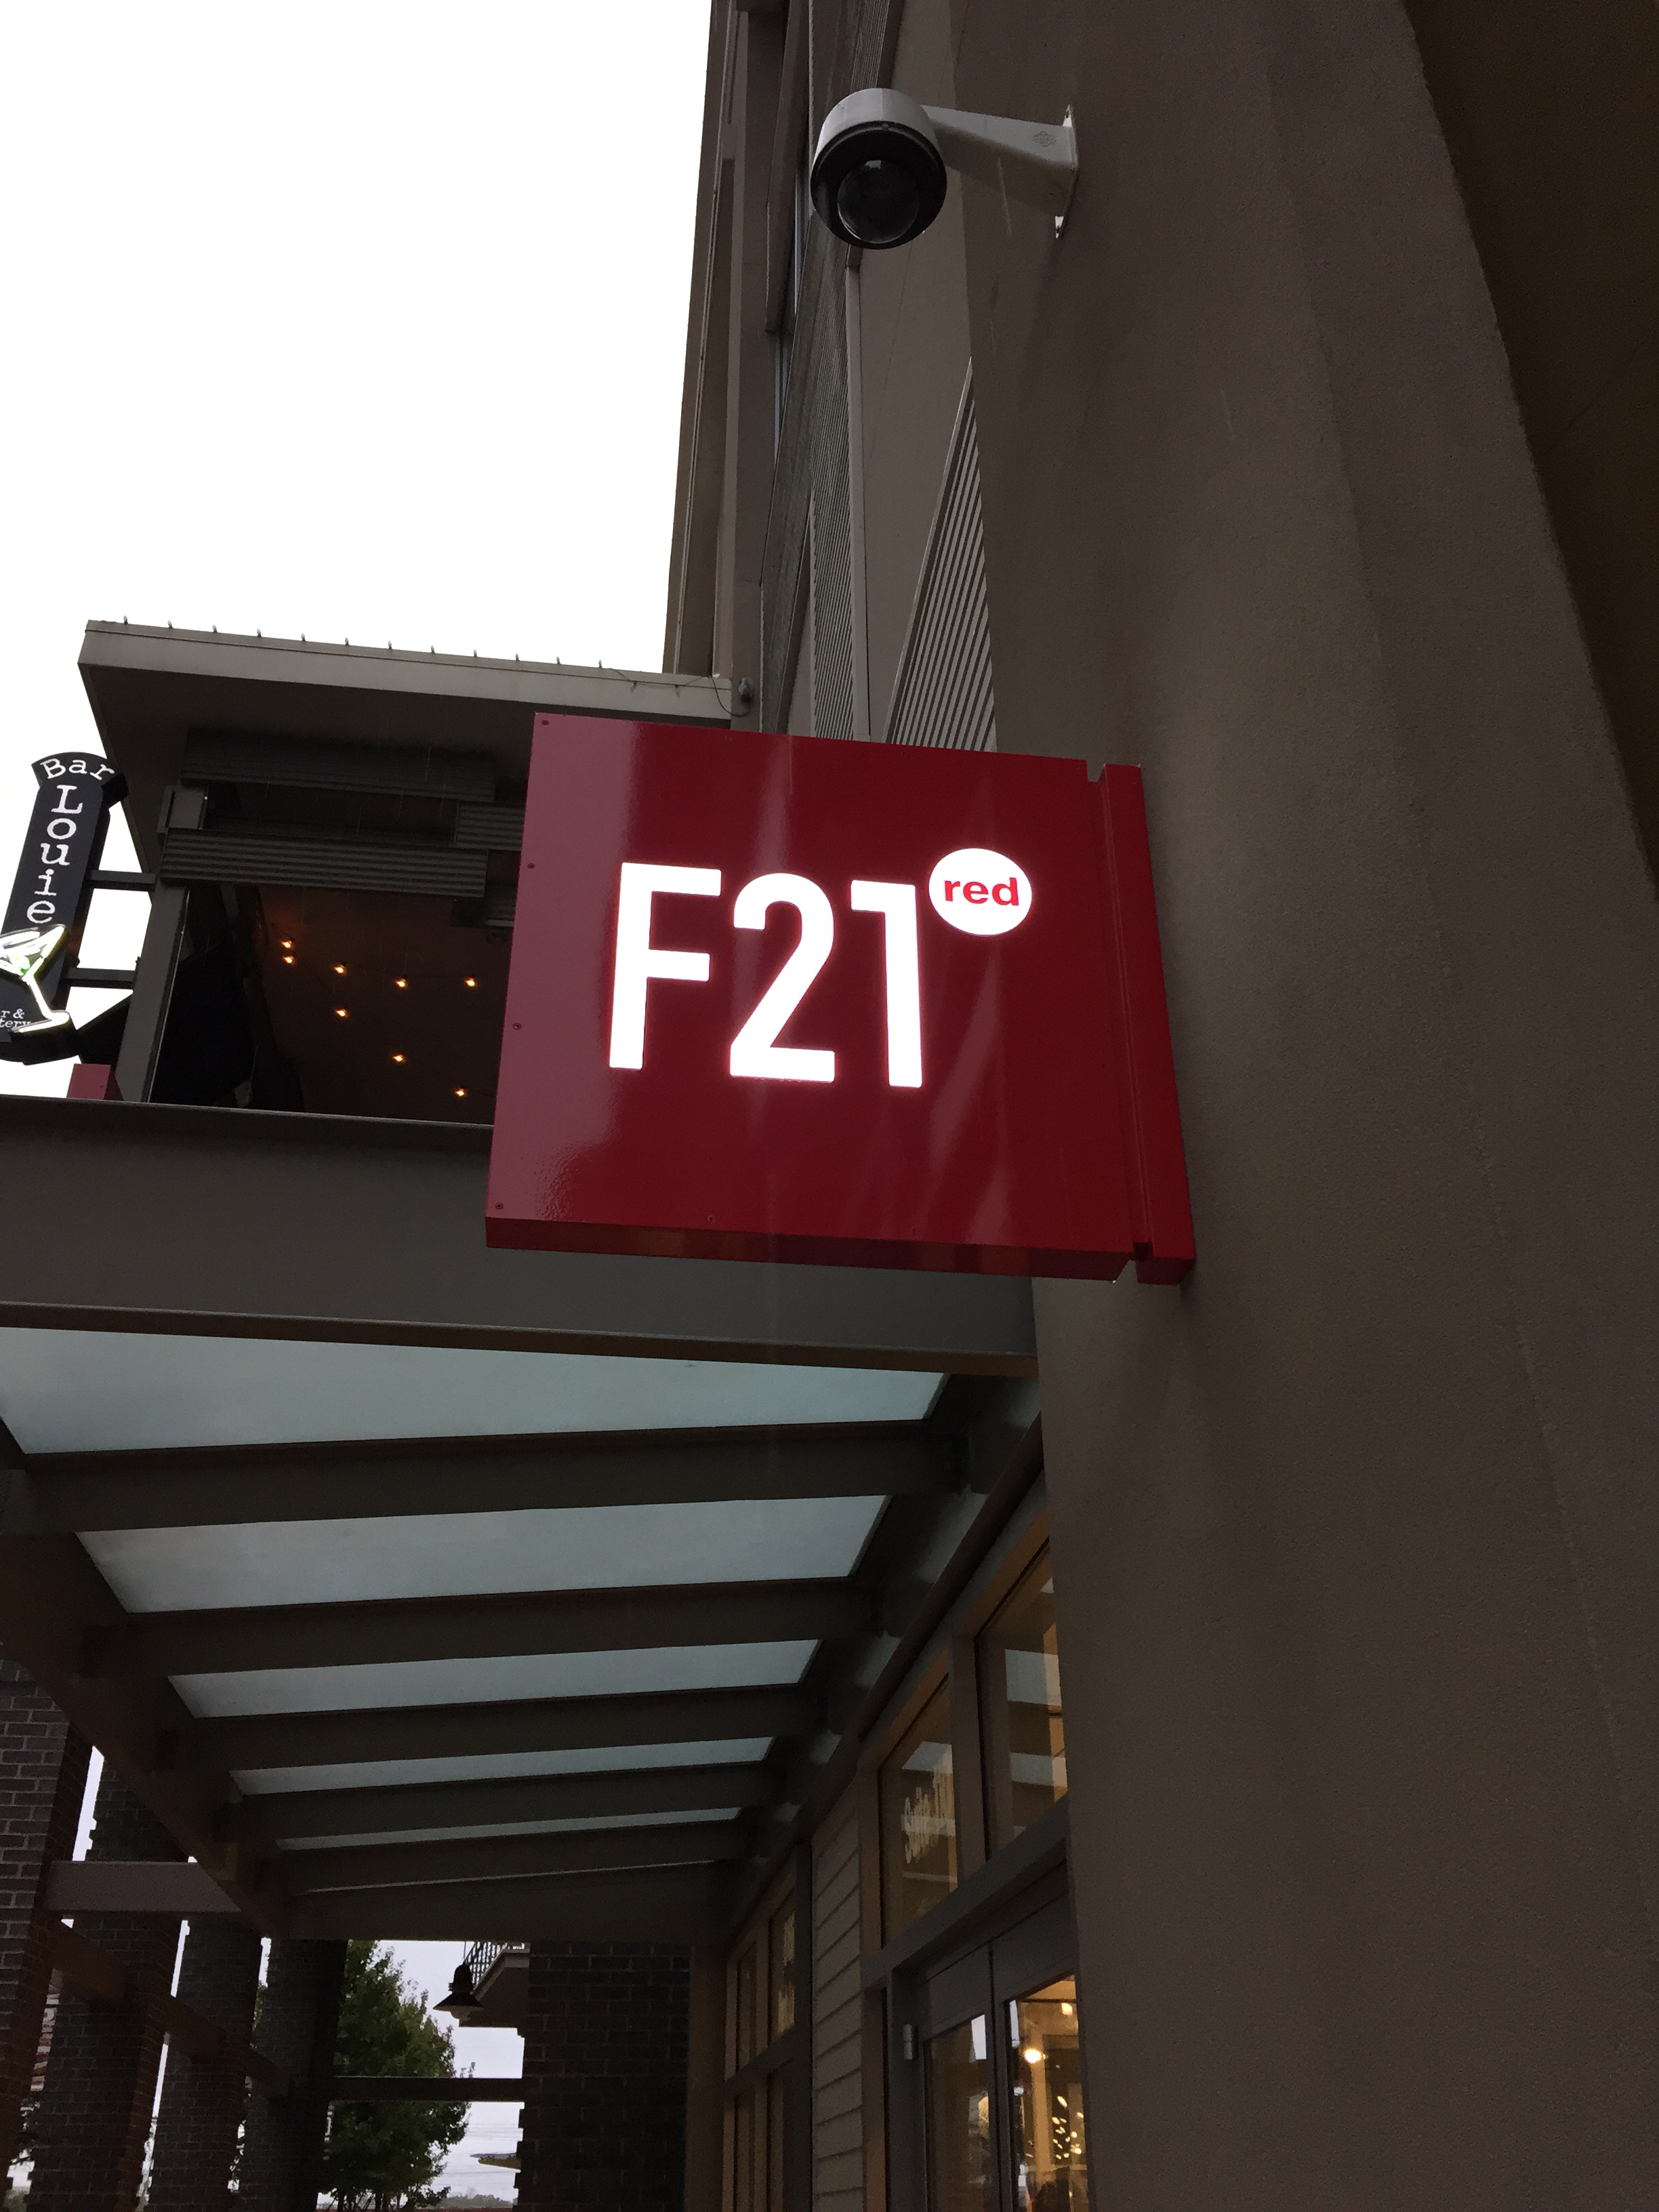 Forever 21 Orlando: conheça a F21 Red com preço mais baixo